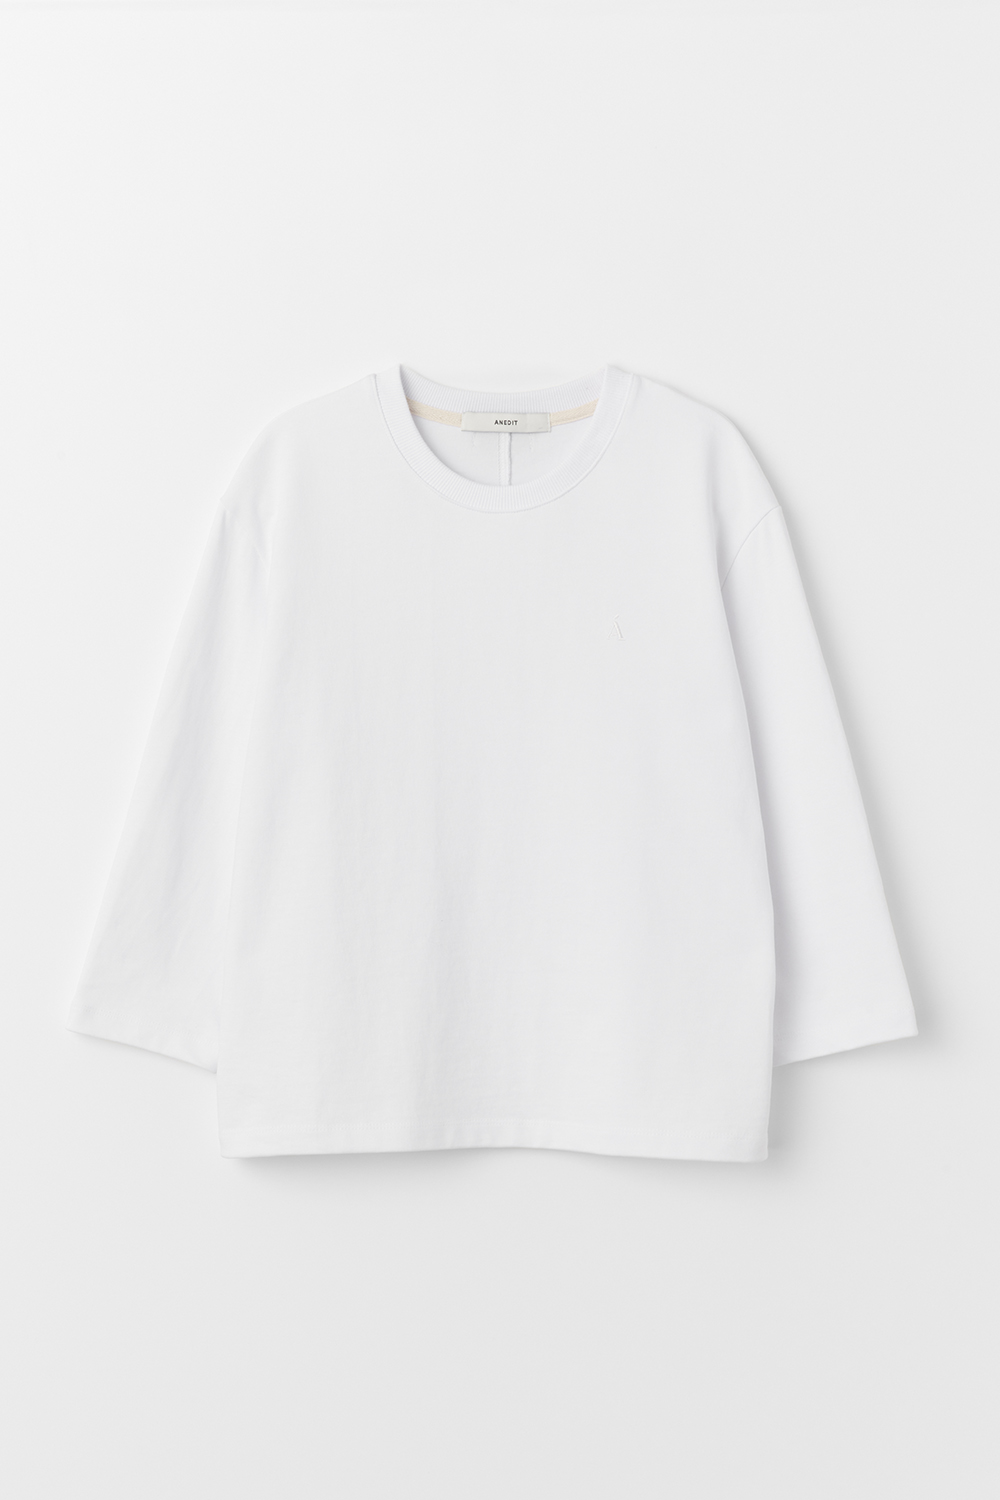 L 3/4 Sleeve Tshirt_White